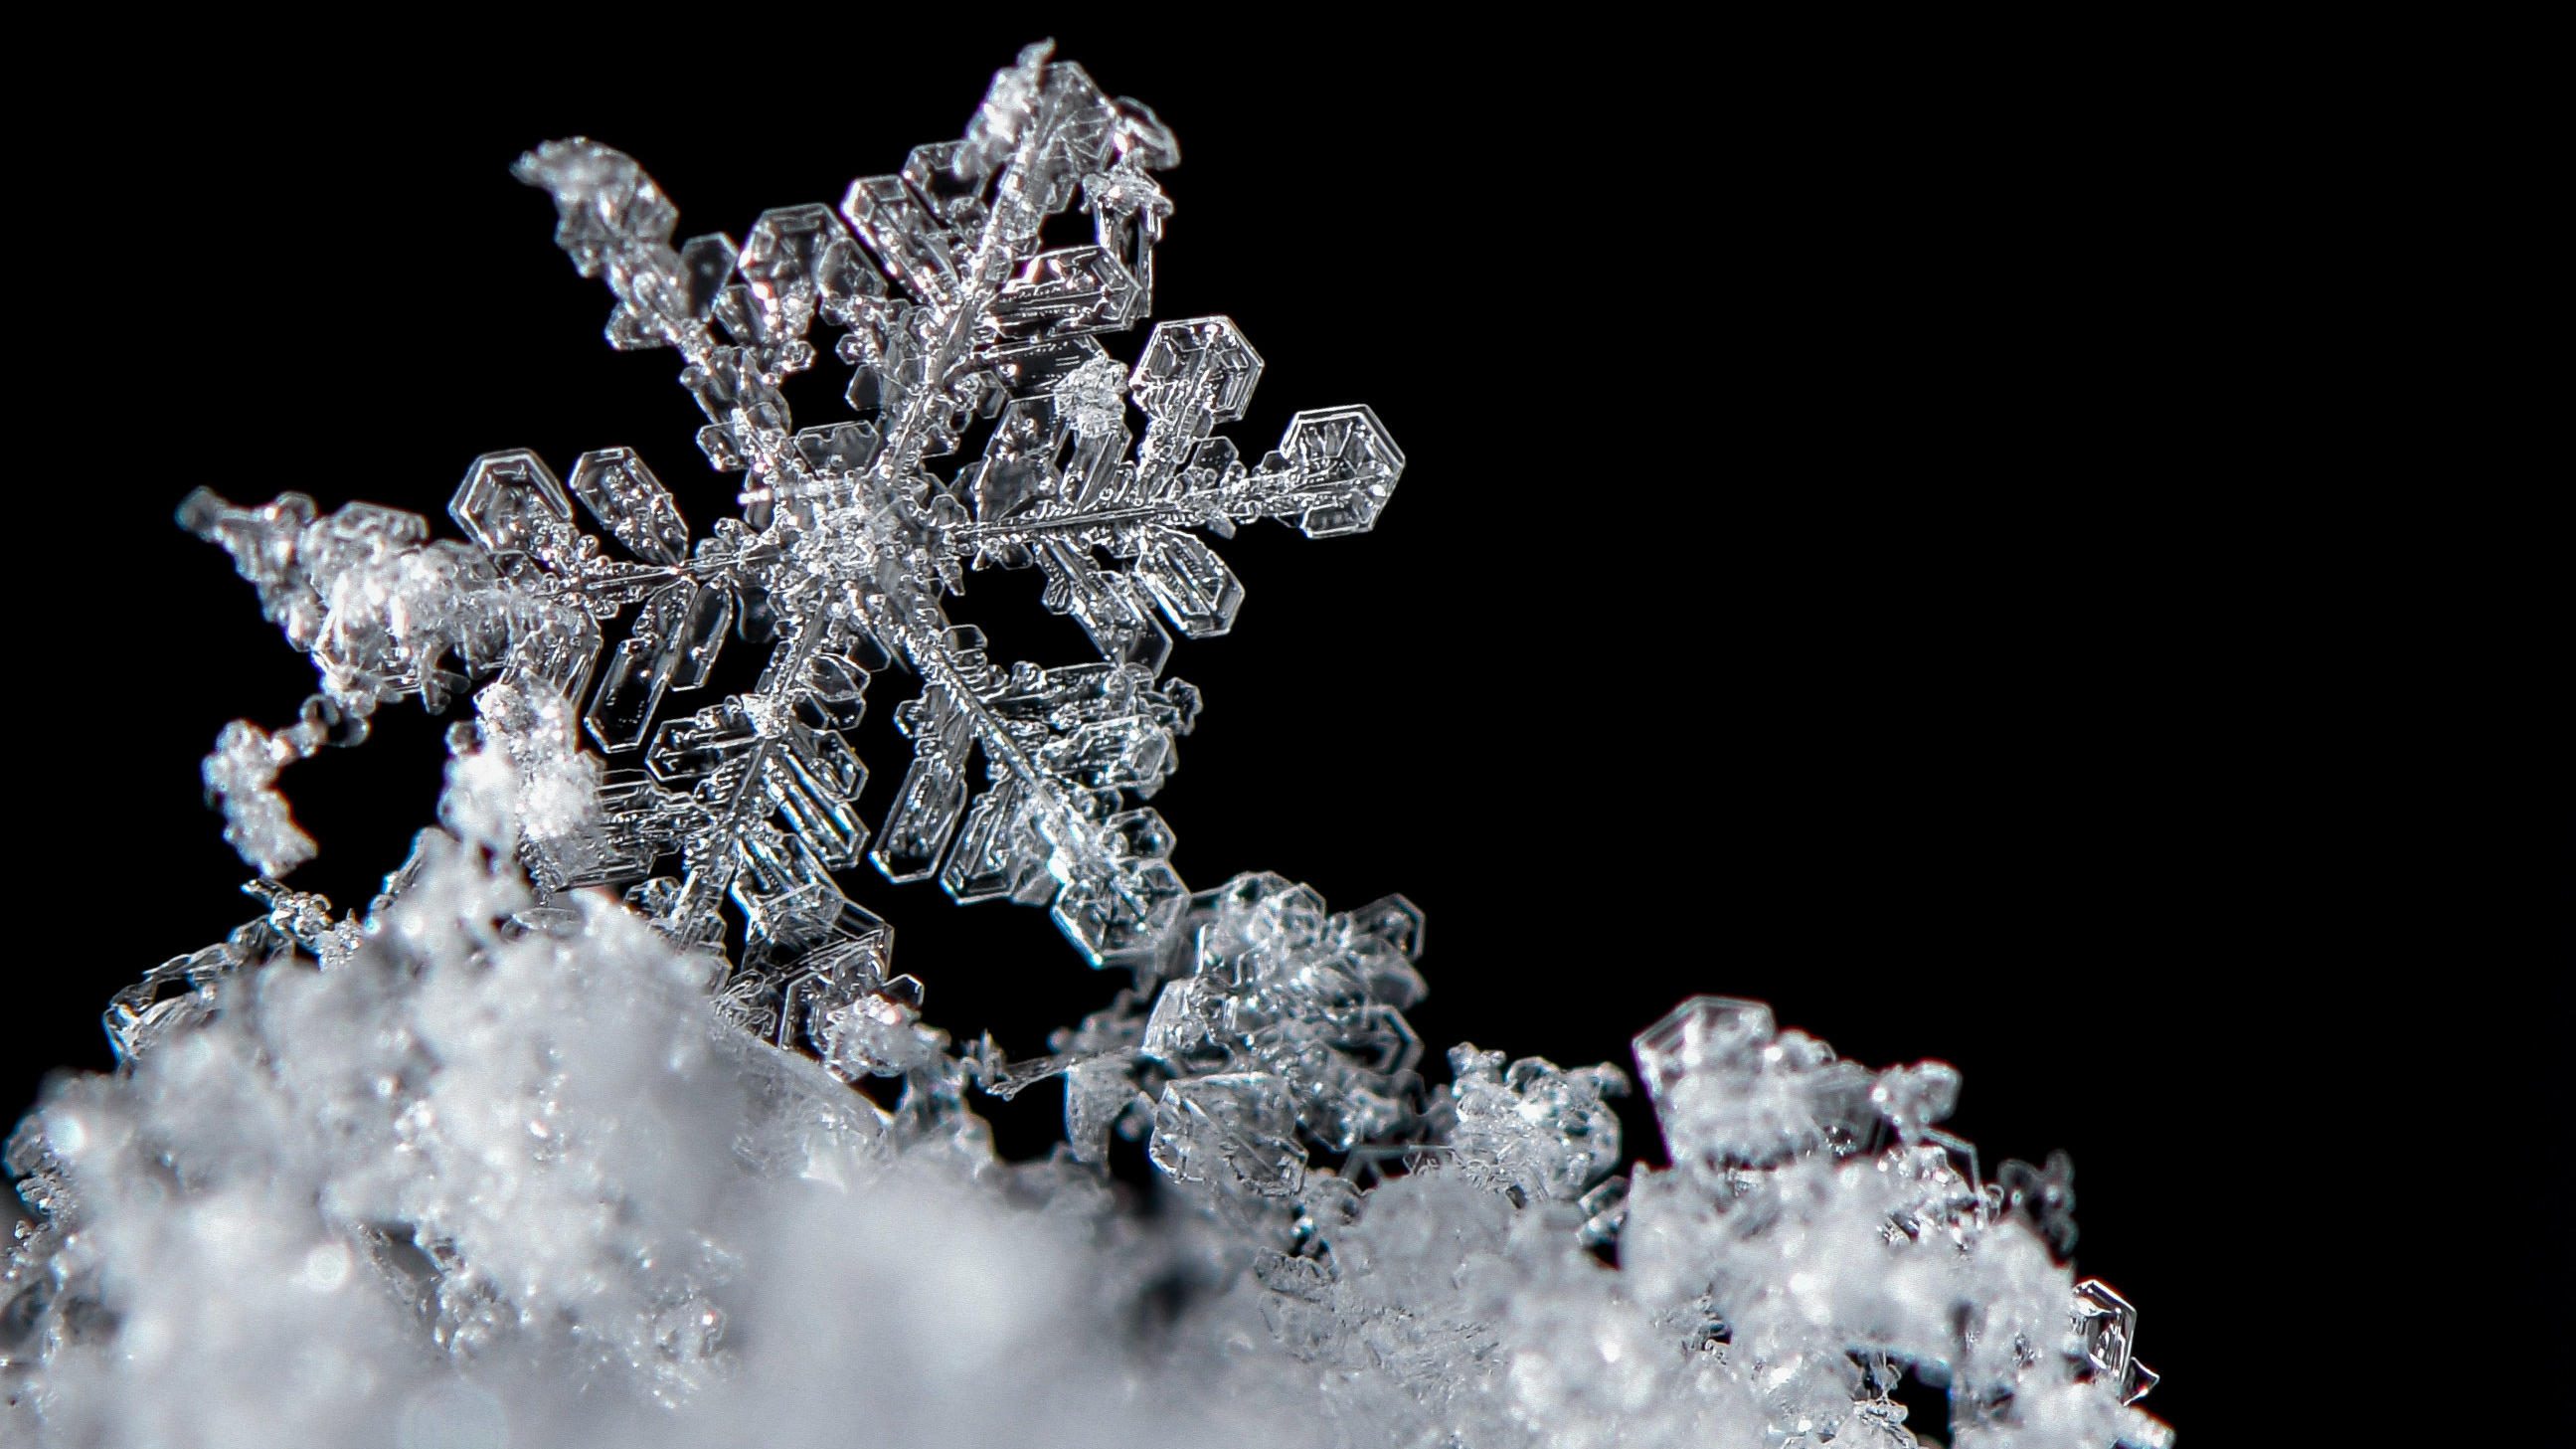 Ein Schneekristall, auch Schneeflocke genannt, liegt auf dem Boden im frisch gefallenen Schnee.